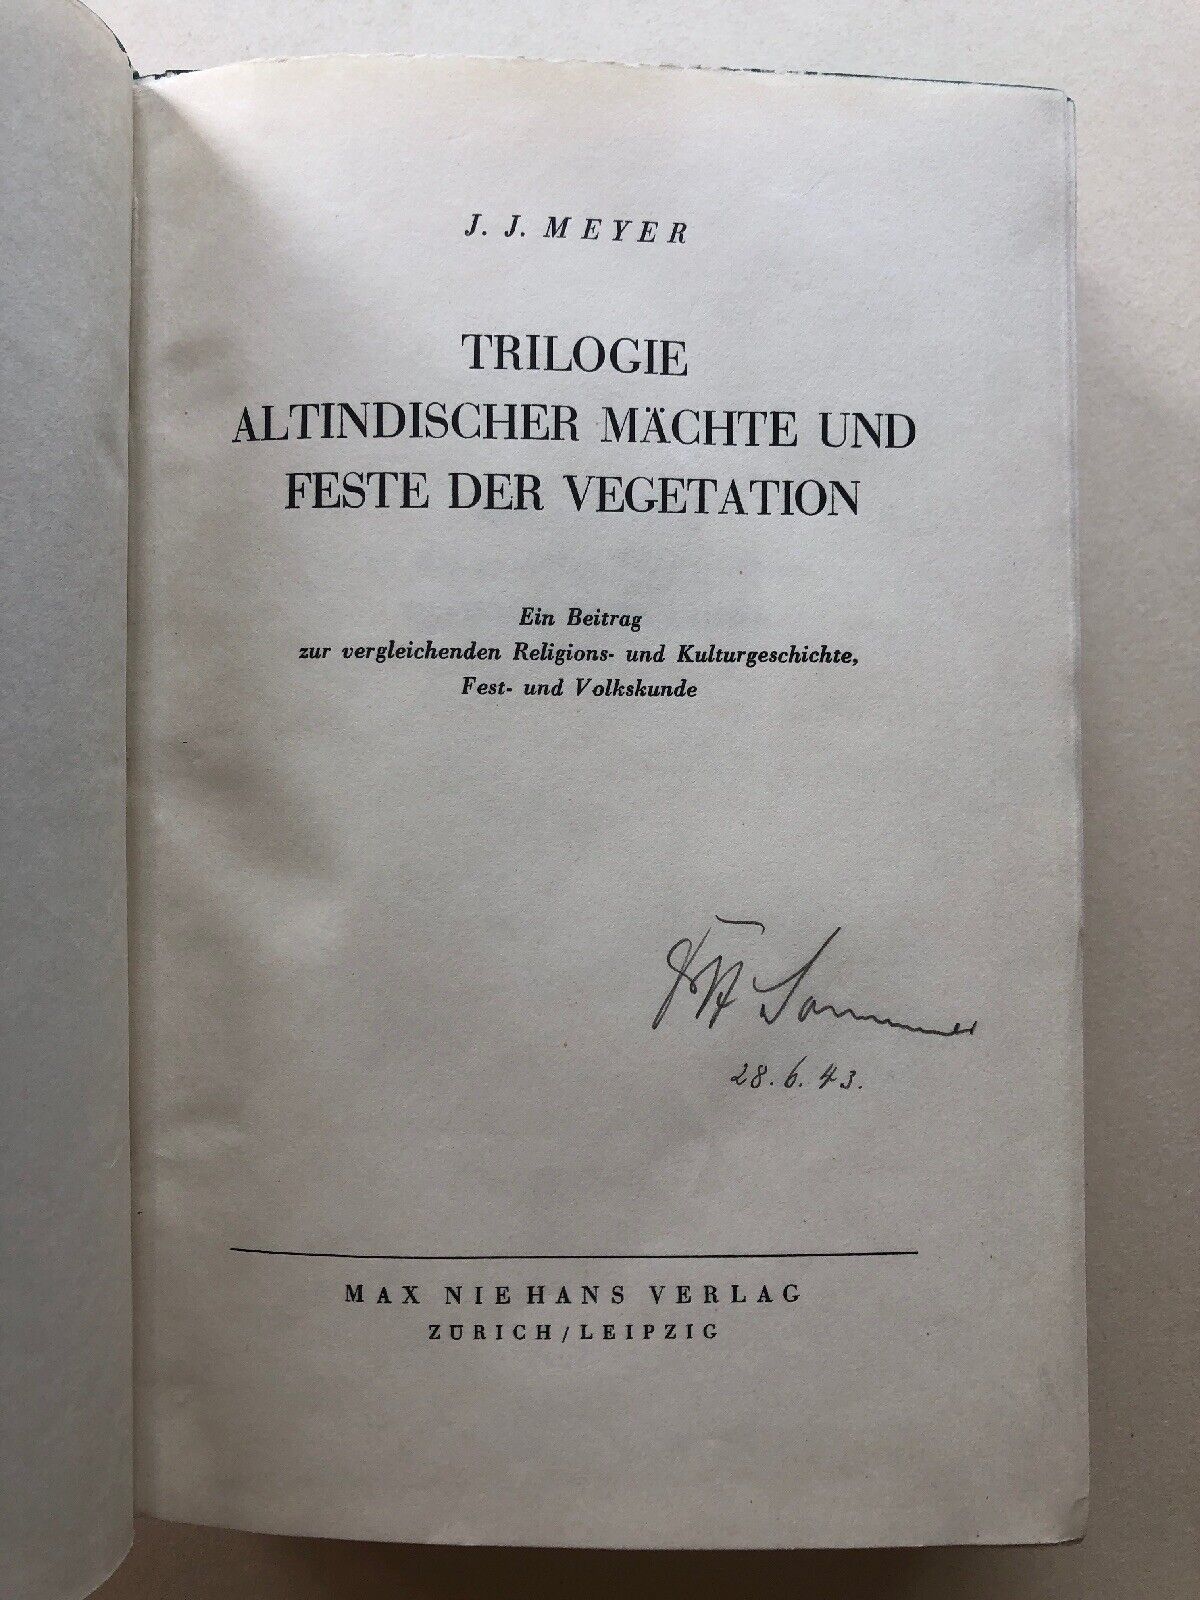 Details zu  Trilogie altindischer Mächte und Feste Der Vegetation, 1937, J.J. Meyer, Kultur Neues Inventar